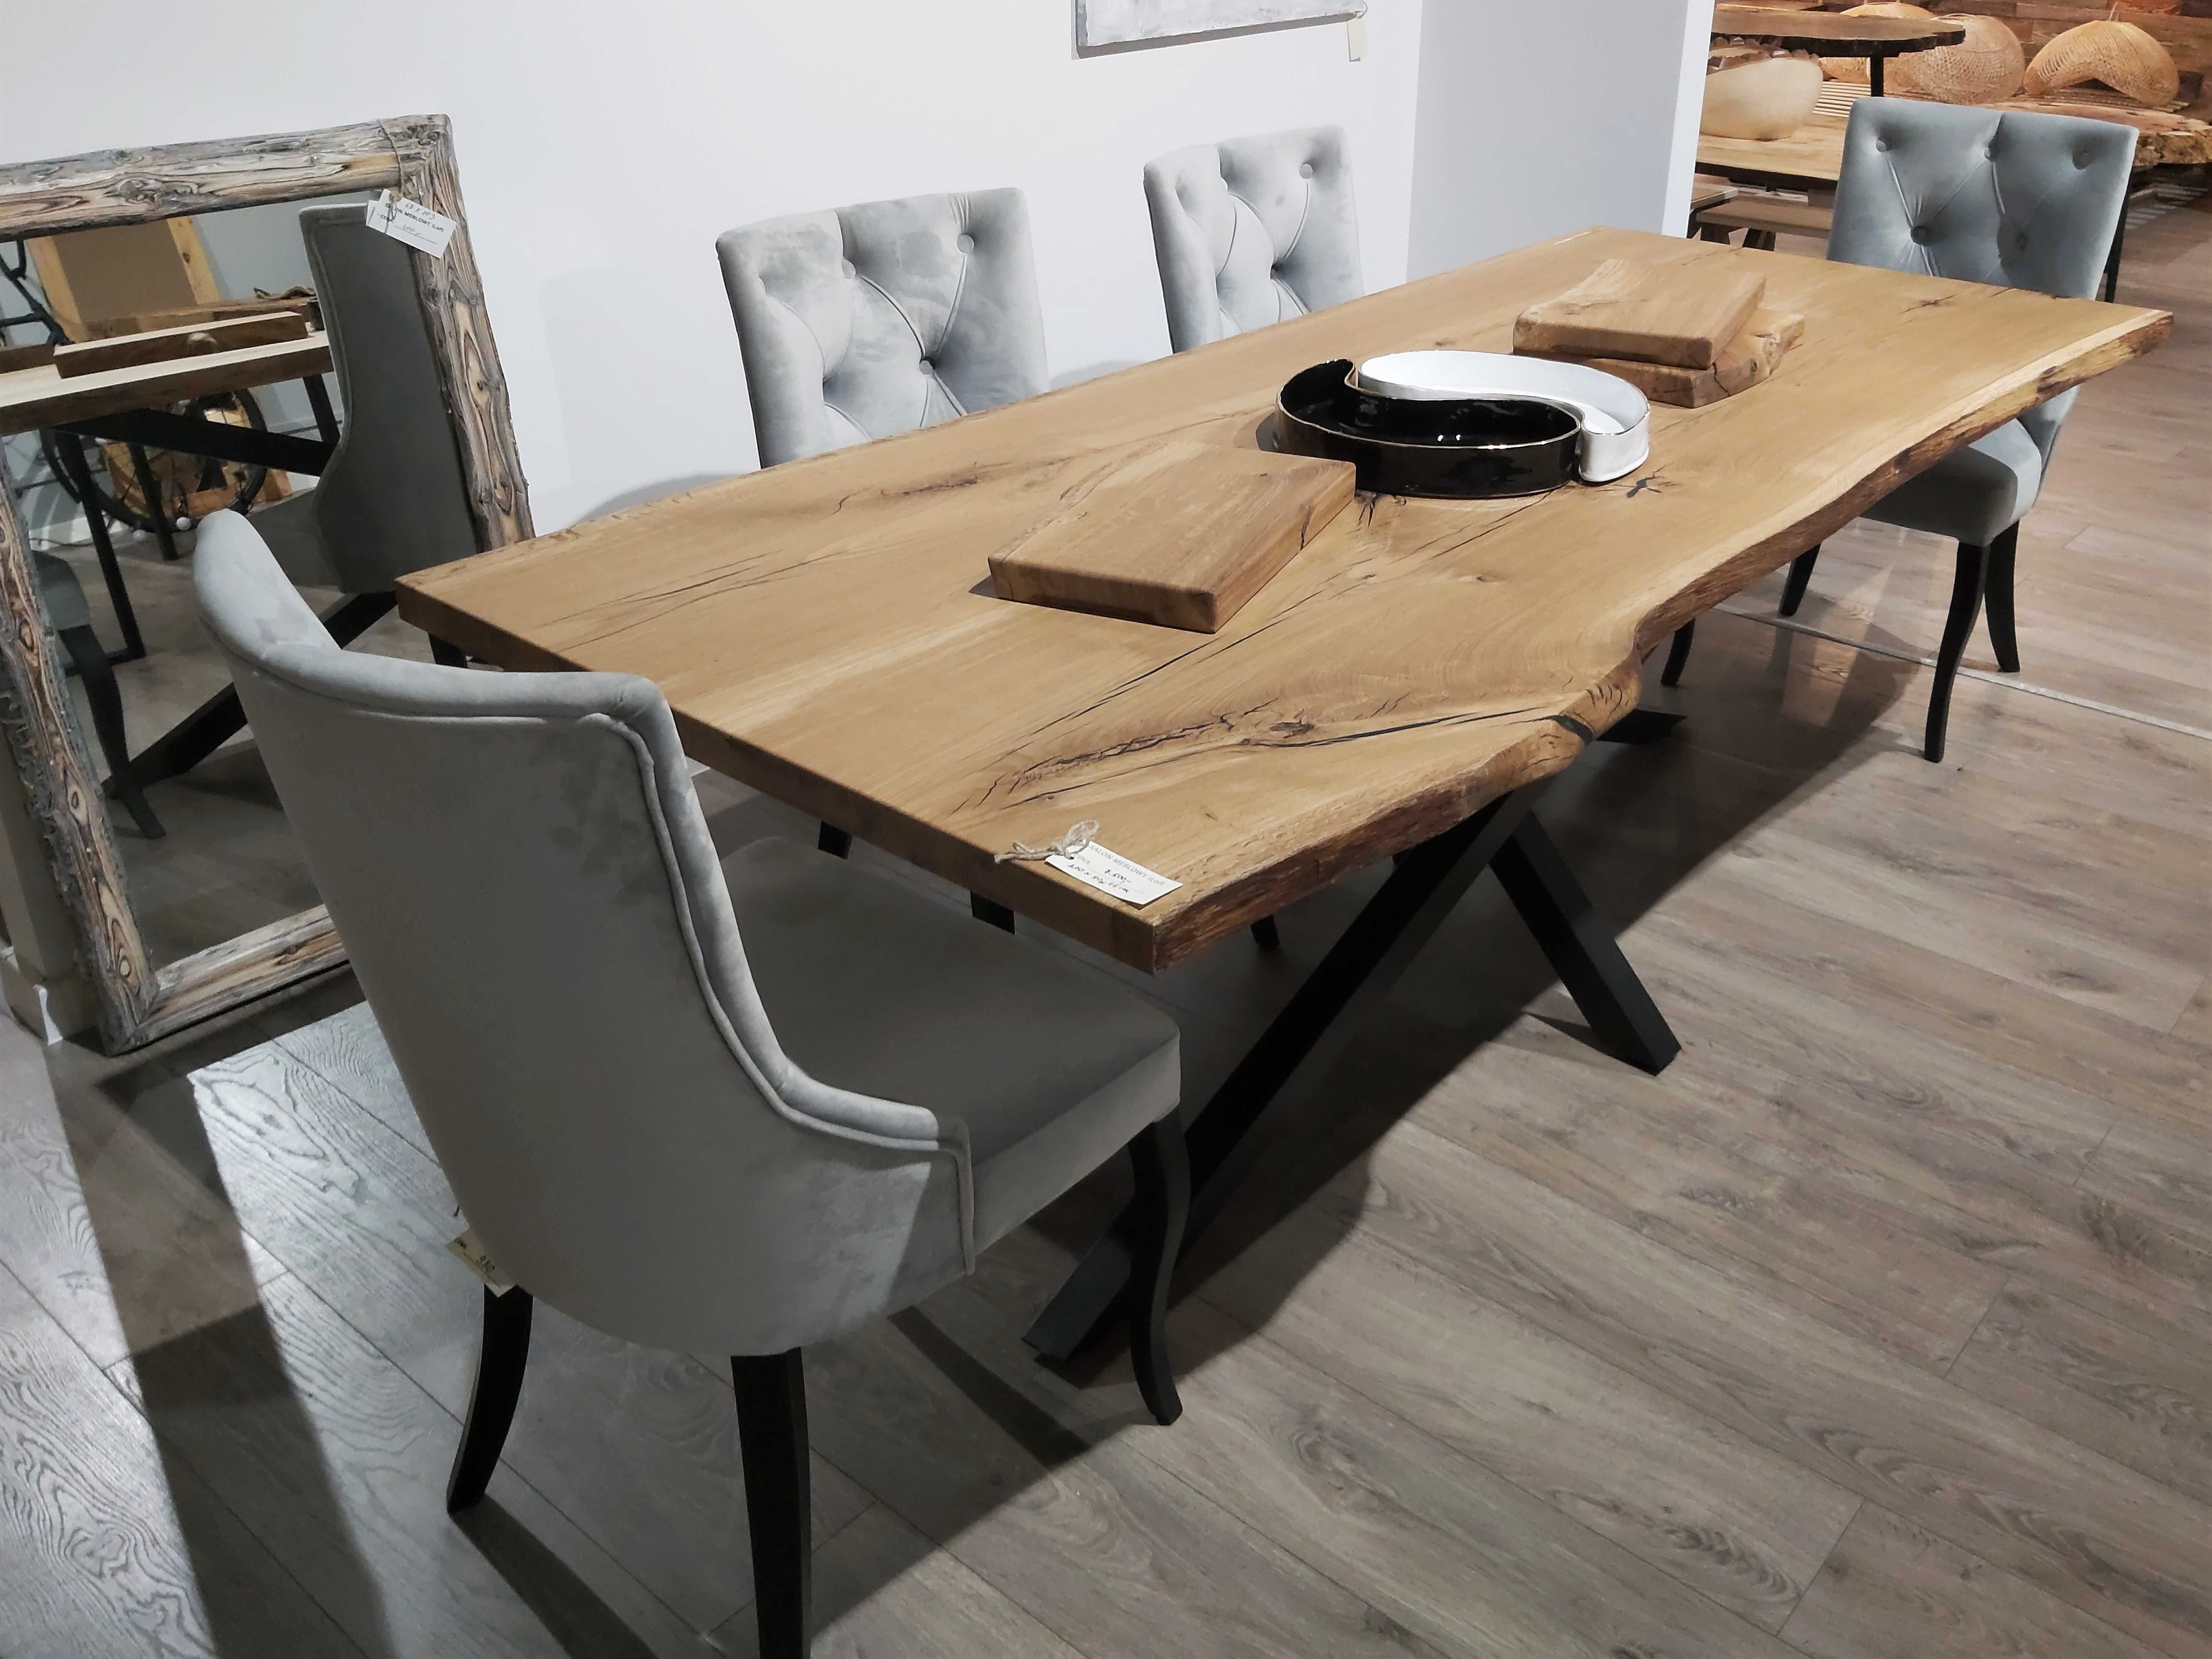 Stół stolik drewniany dębowy z litego drewna na wymiar oflis PRODUCENT